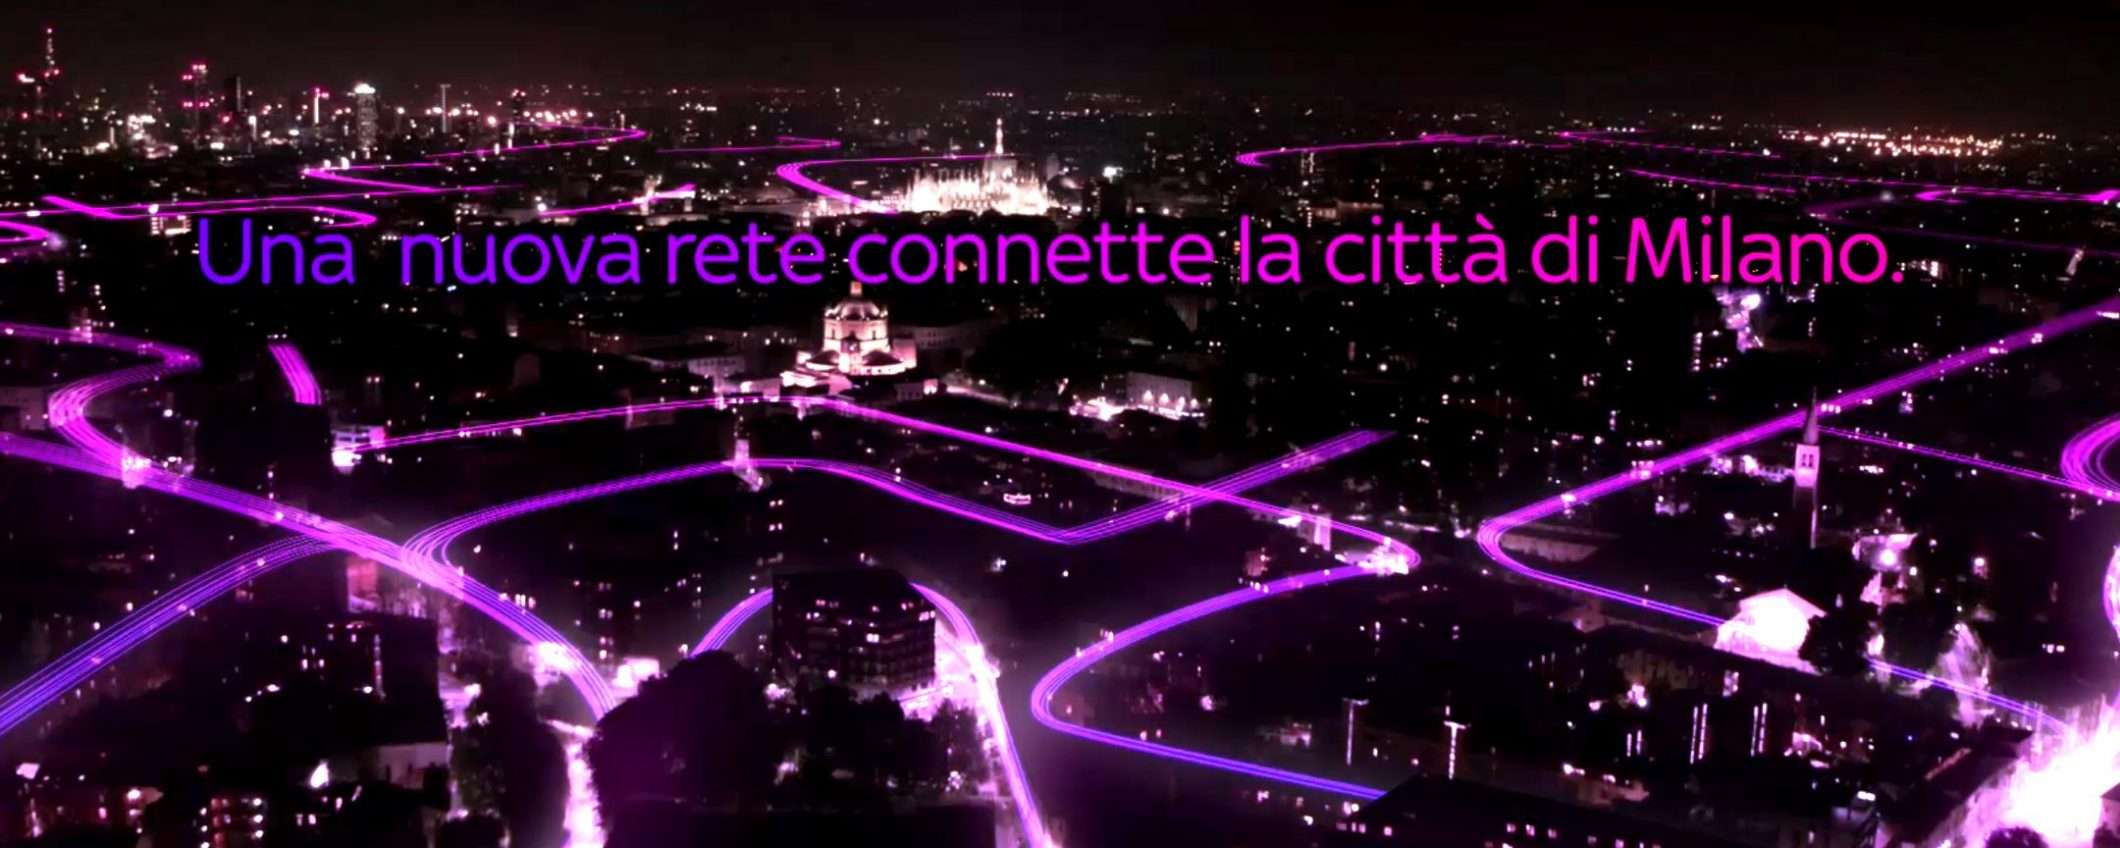 Sky Wifi: un video per la città di Milano